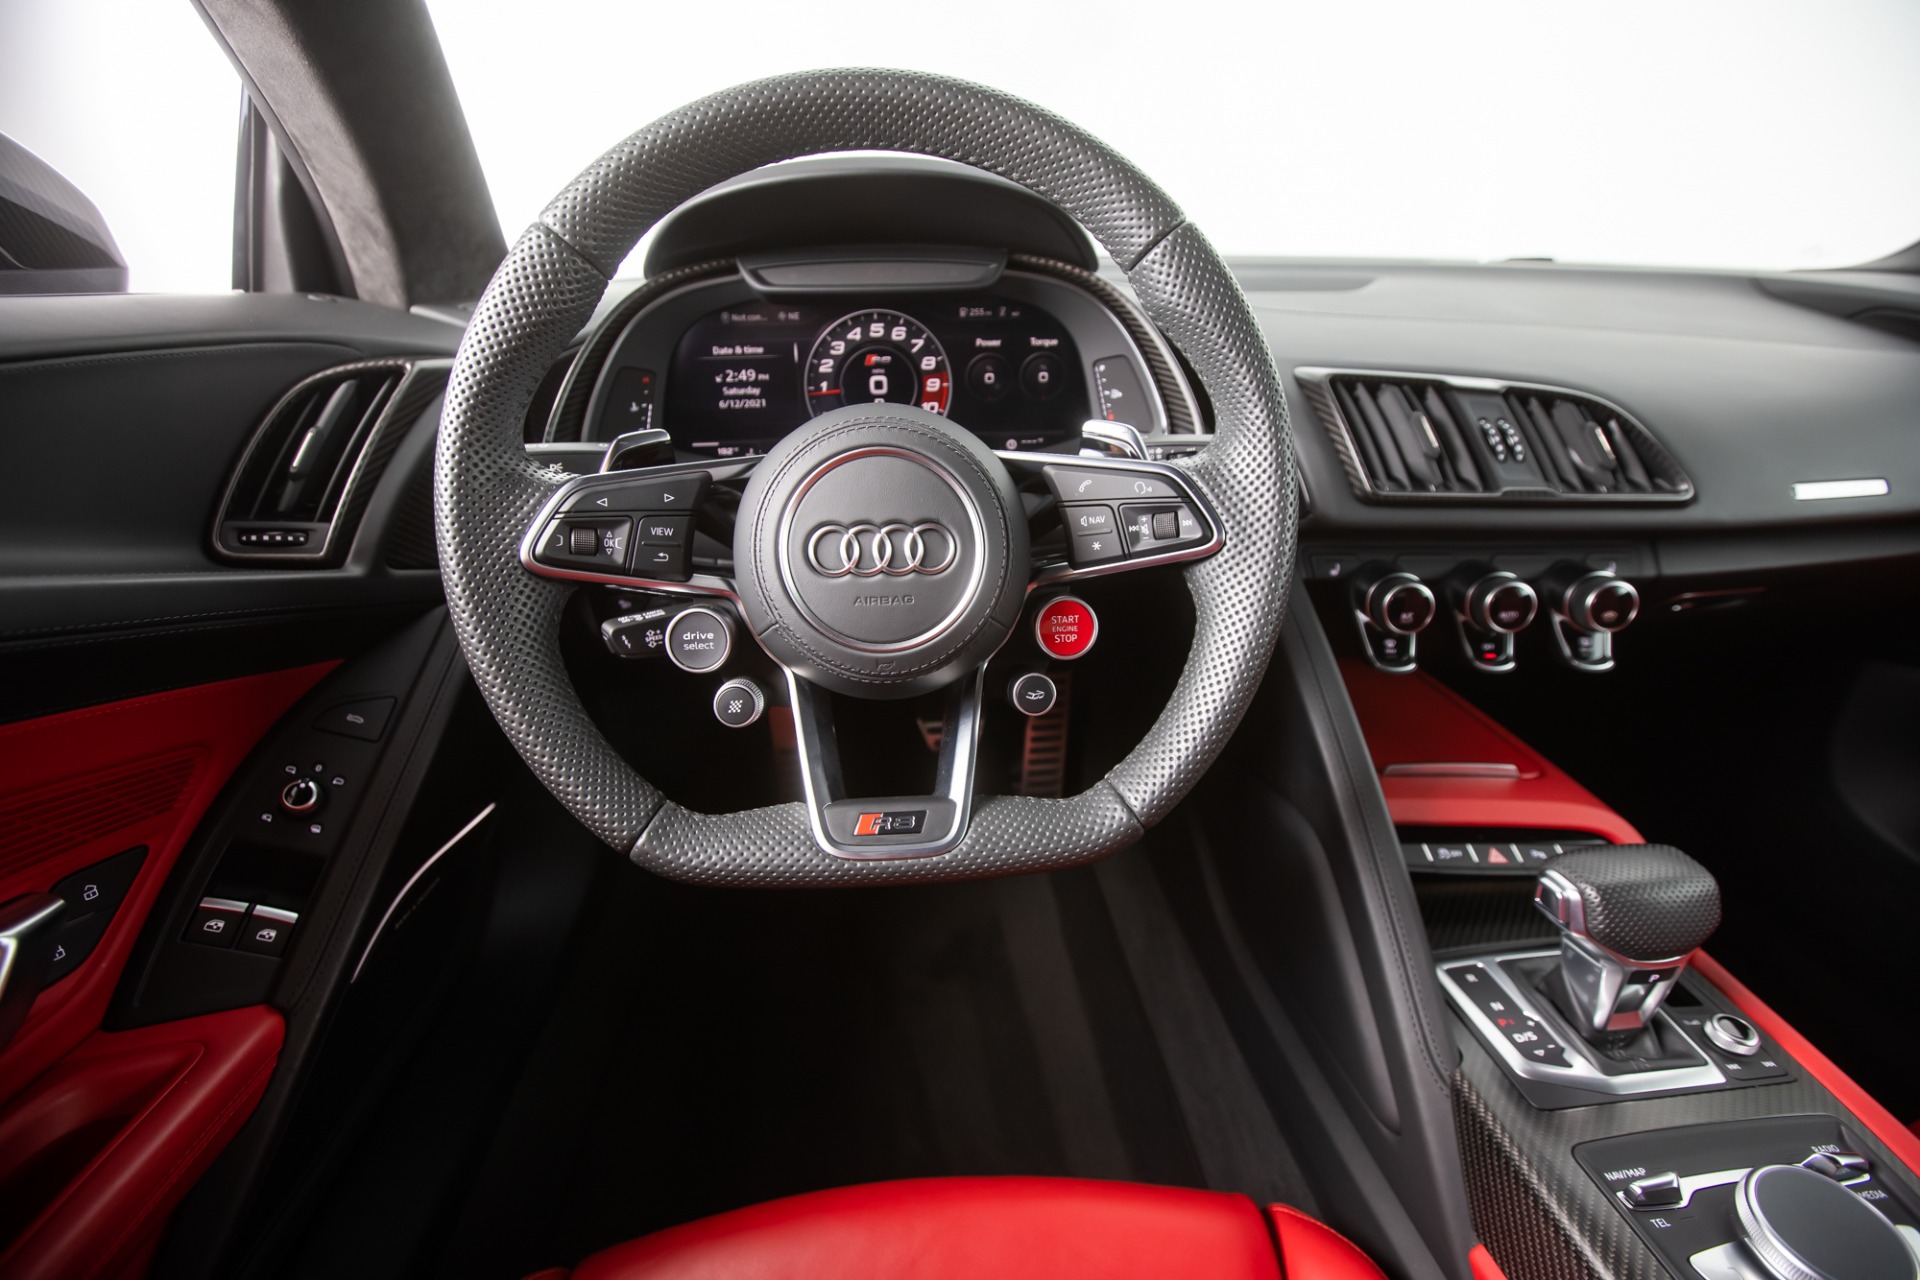 2017 Audi R8 5 2 Quattro V10 Plus